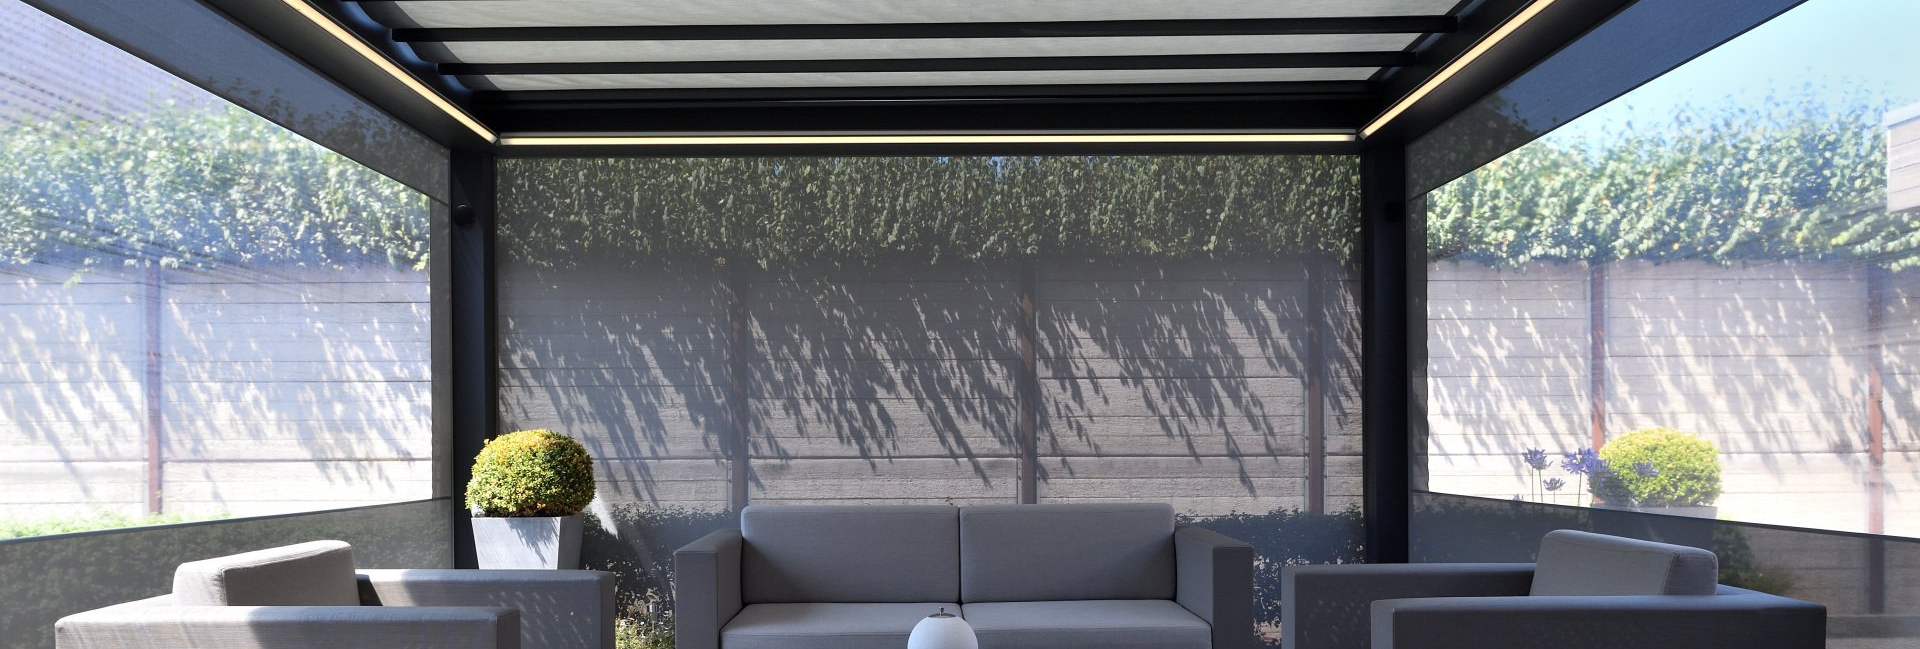 Aluminium-Terrassenüberdachung B250 XL: Pergola mit Lamellendach günstig aus Berlin. Die perfekte Überdachung für Ihre Terrasse, Garten oder die Gastronomie.